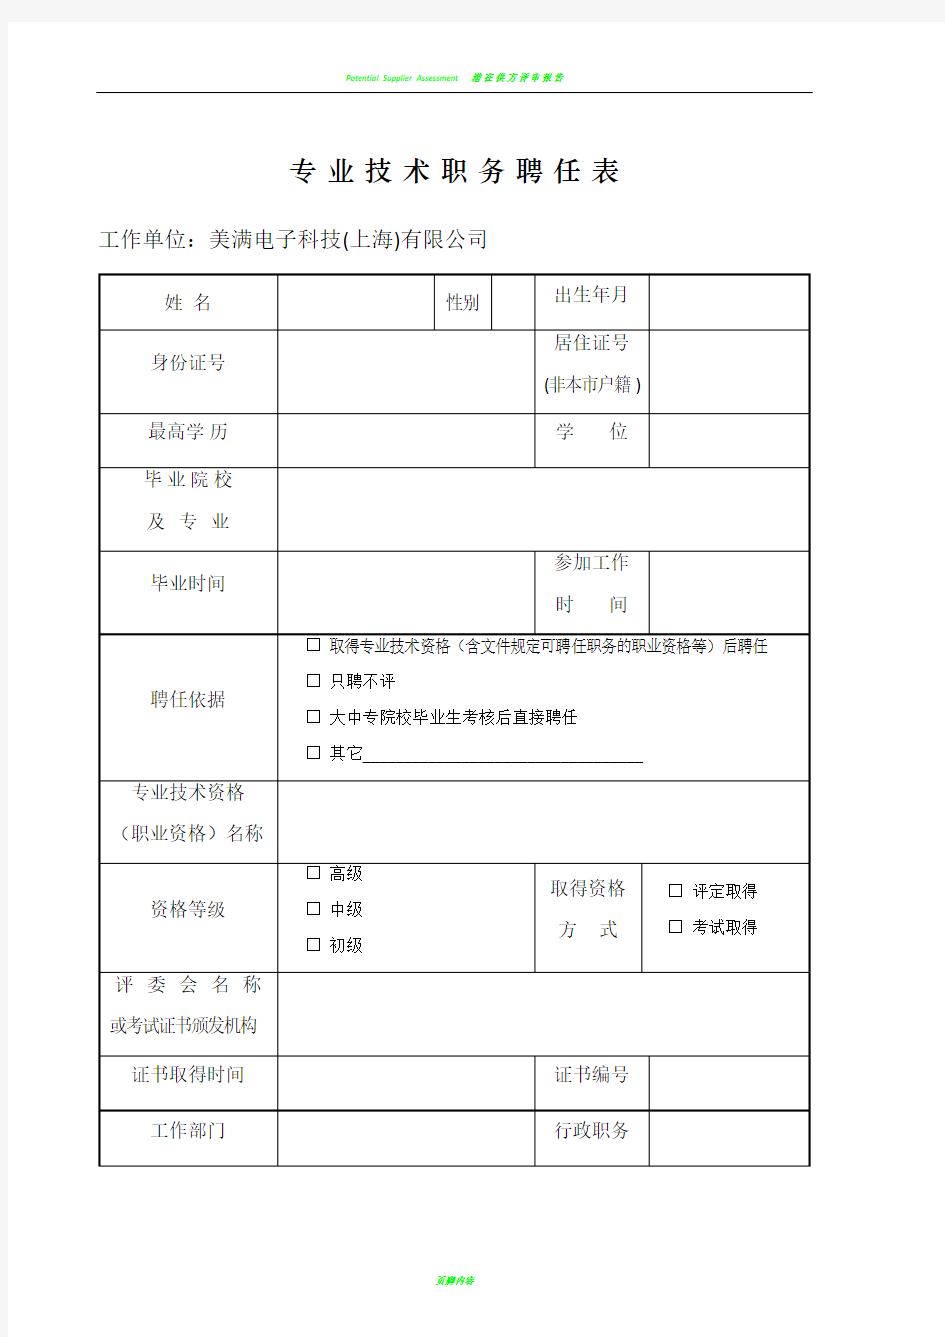 上海专业技术职务聘任表(职称评定聘书模板)